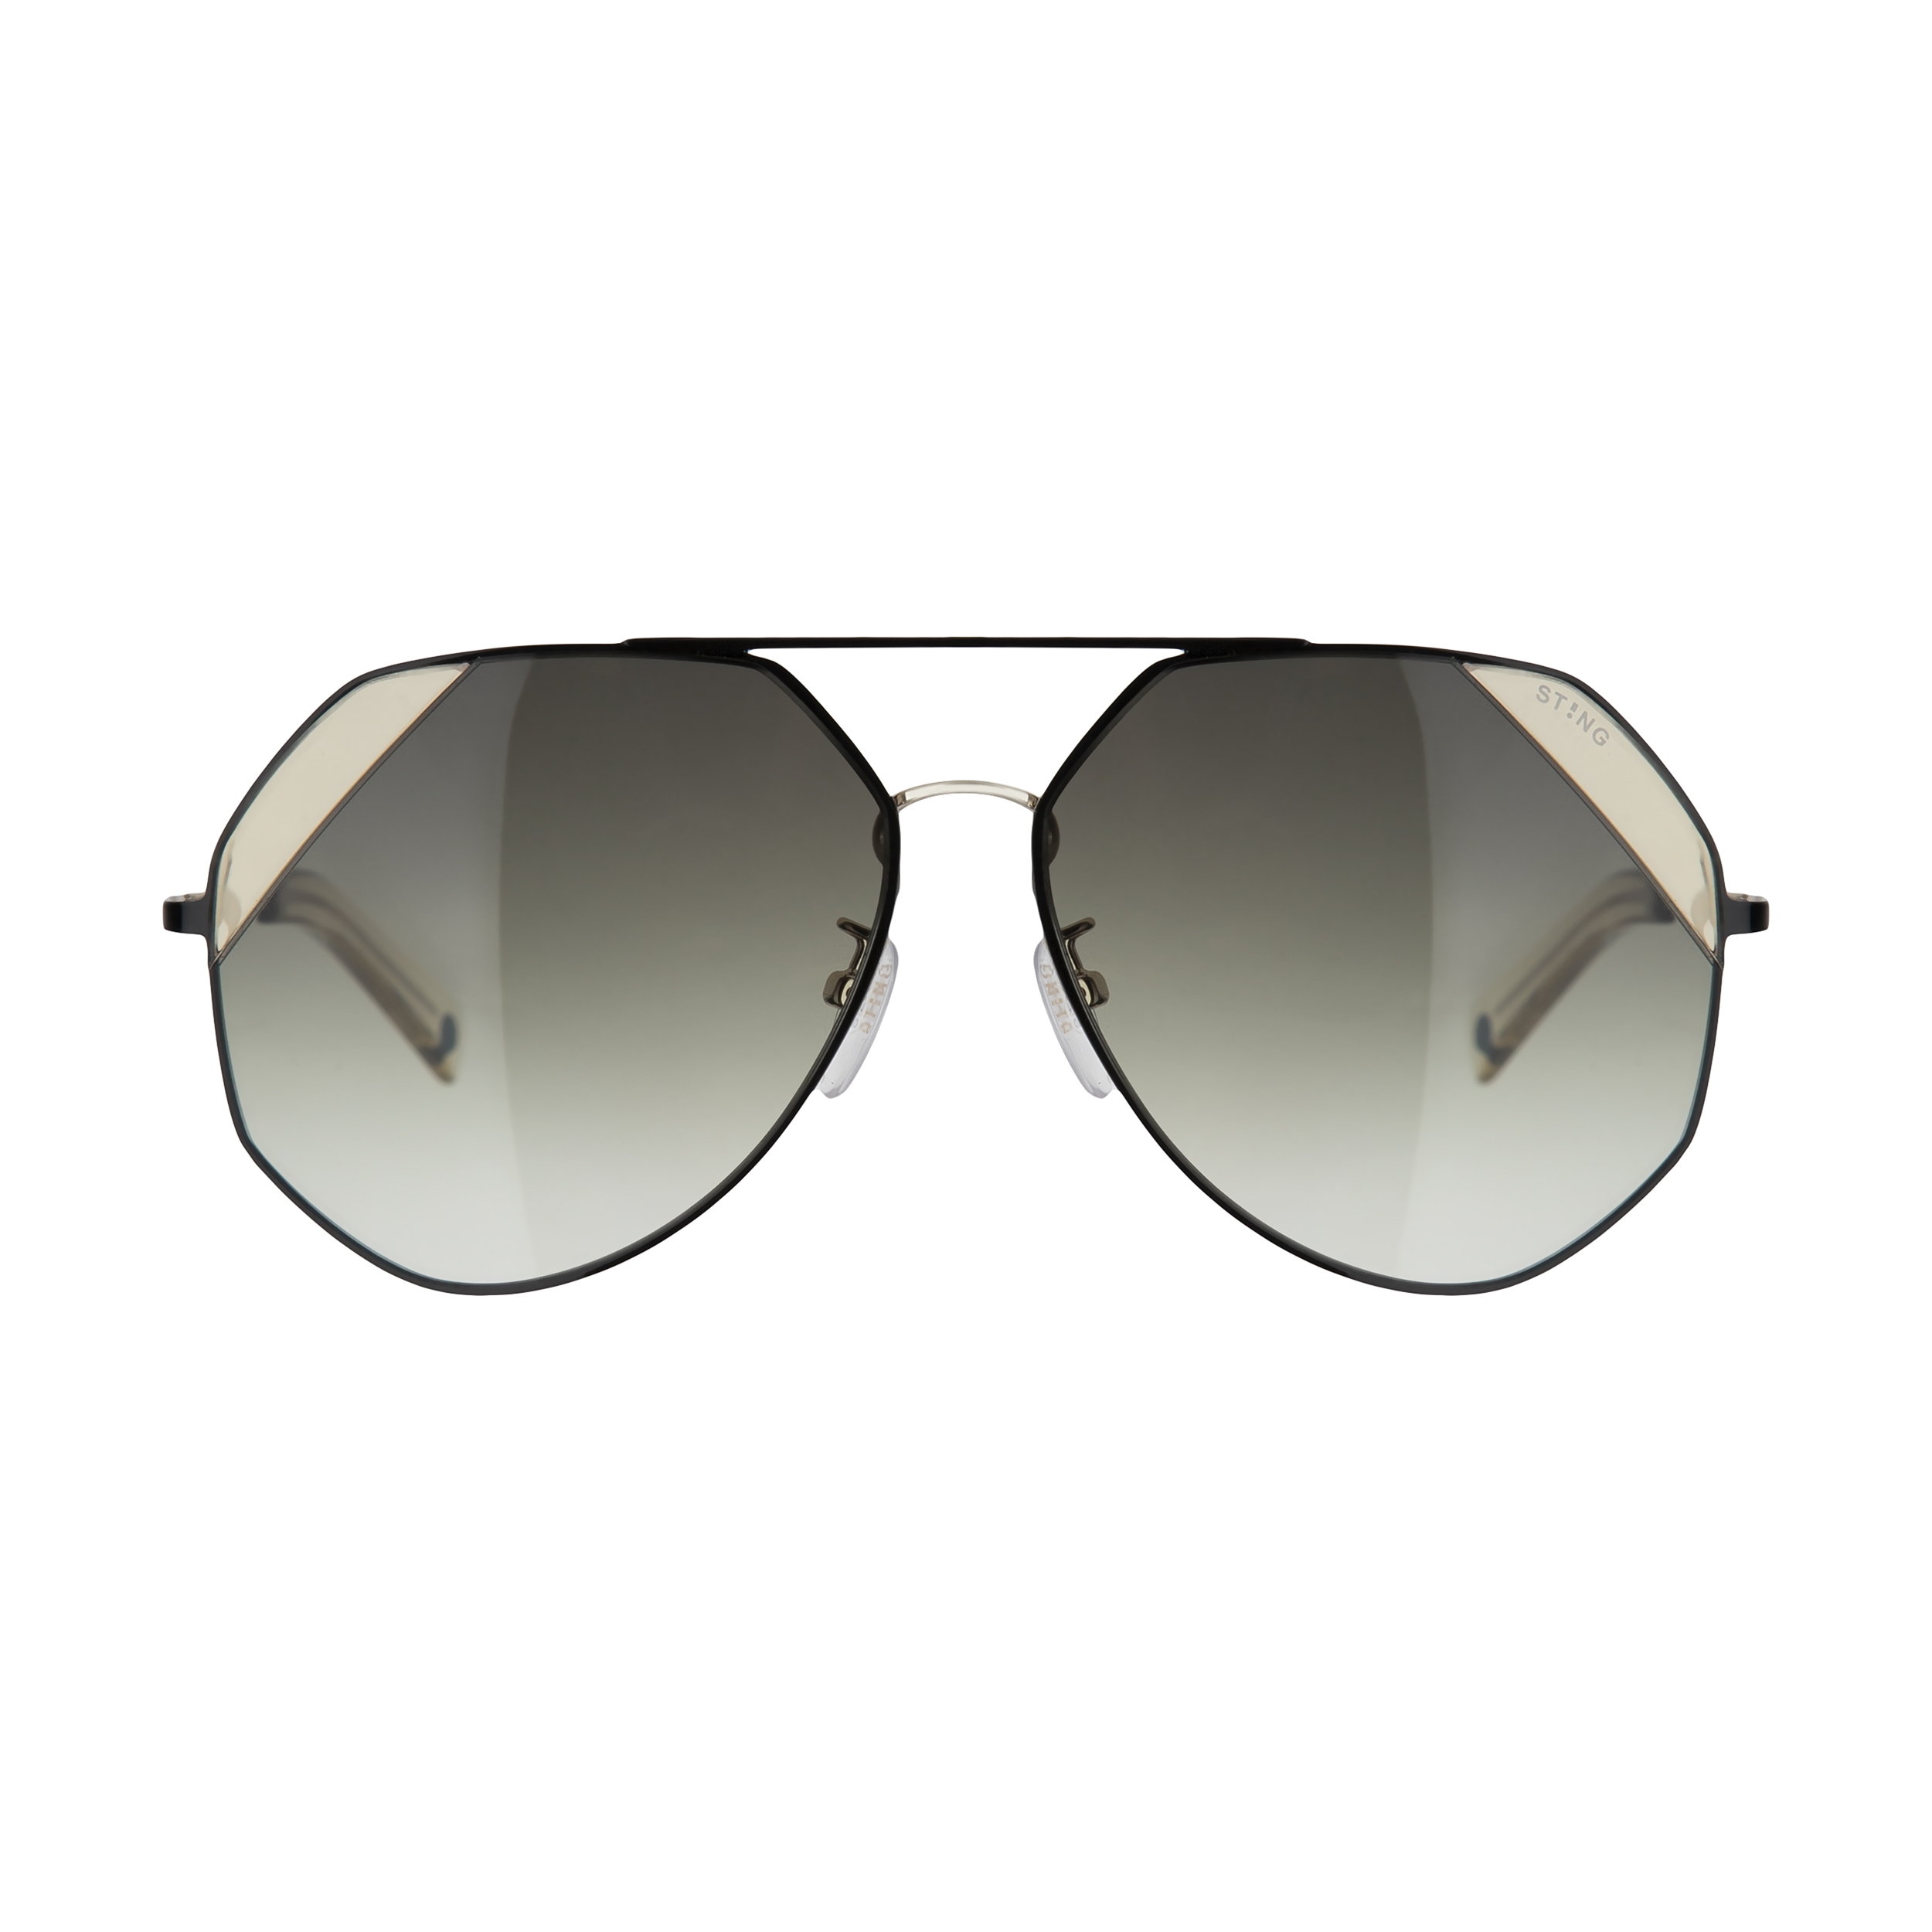 عینک آفتابی مردانه استینگ مدل SST314 0301